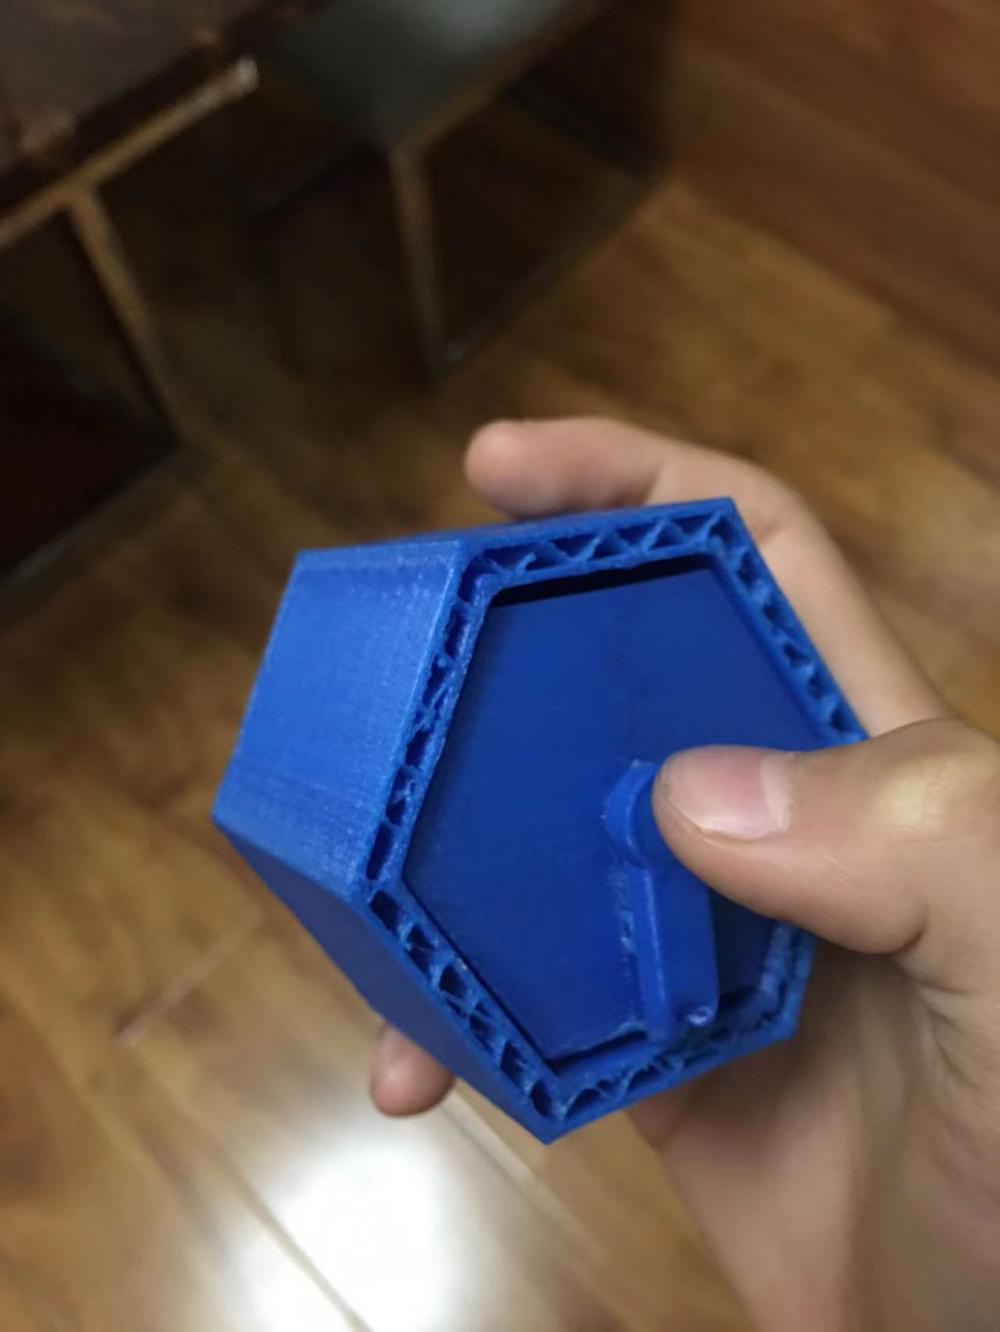 六边形抽屉3D打印模型